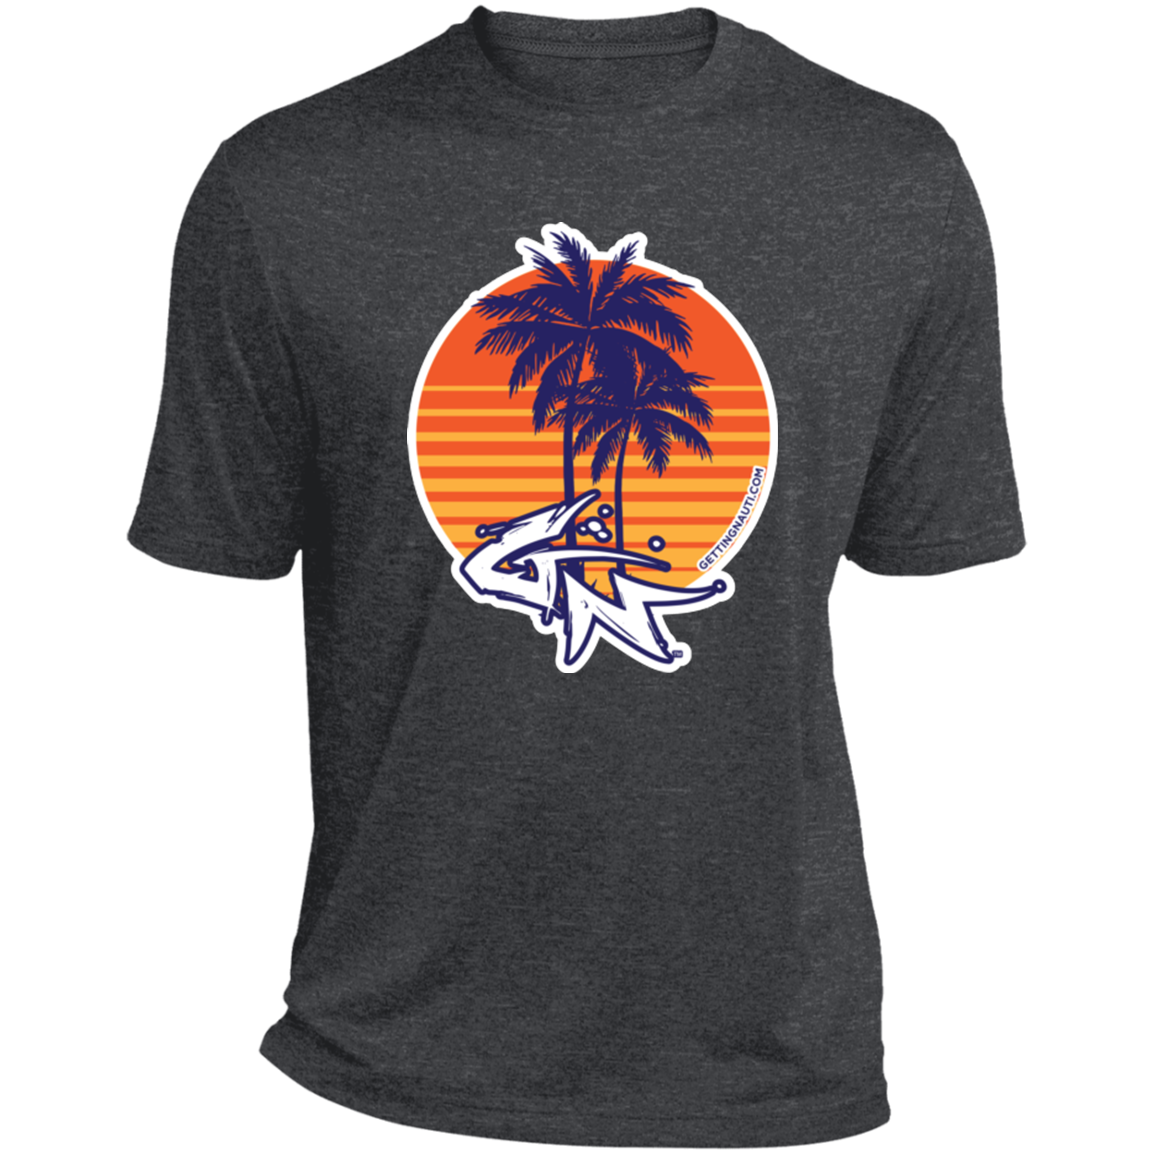 Retro Palm Trees - Performance T-Shirt